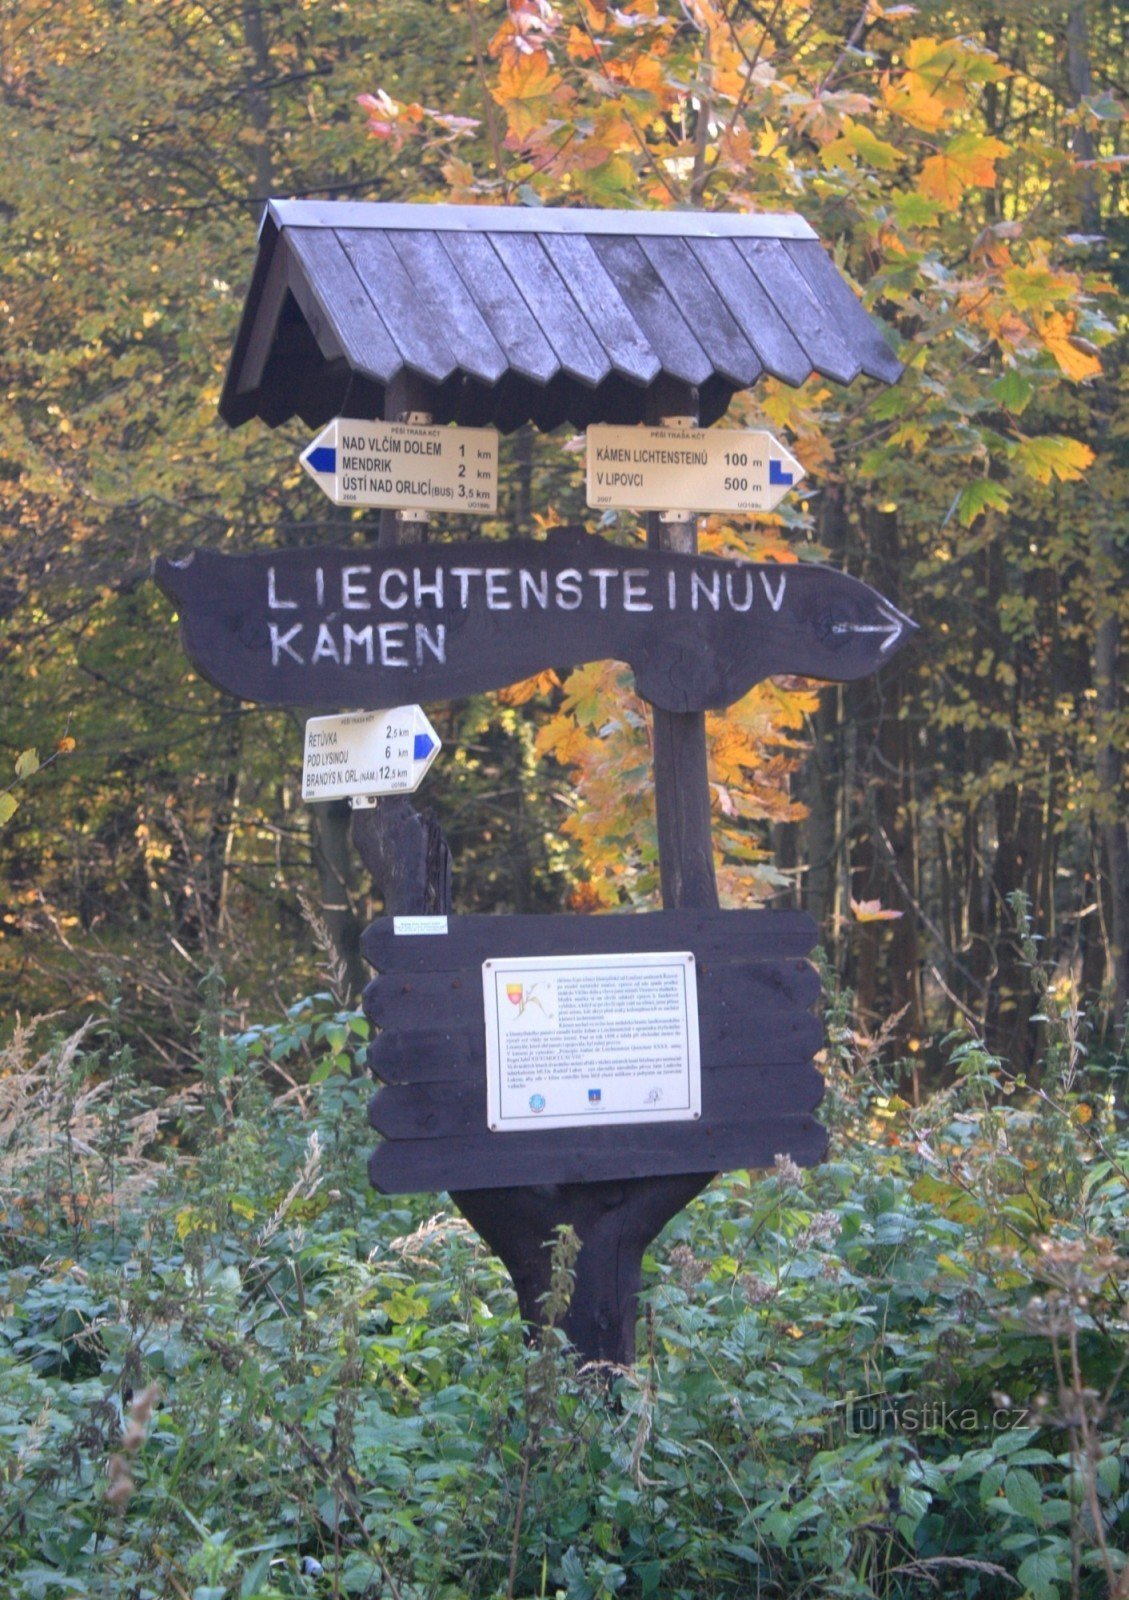 Encruzilhada turística na pedra de Liechtenstein